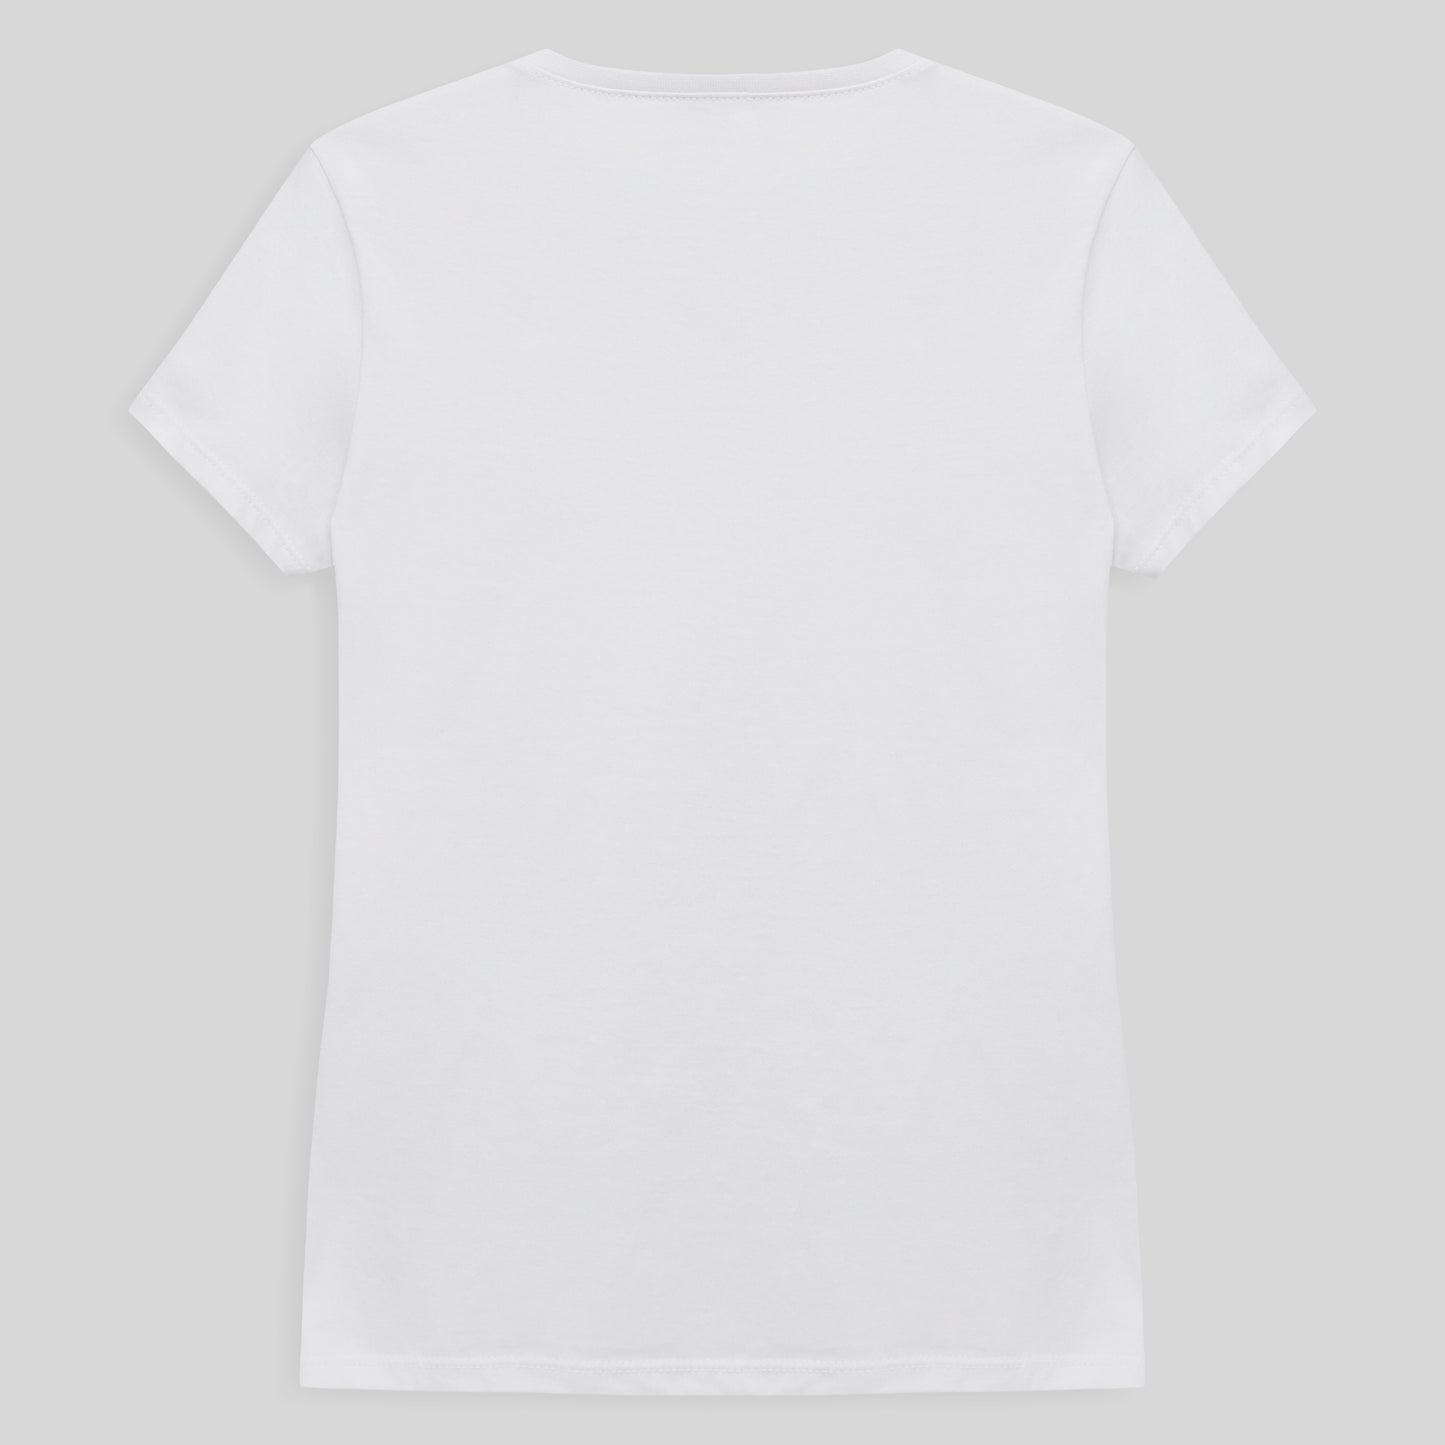 Camiseta Slim Gola V Feminina - Branco